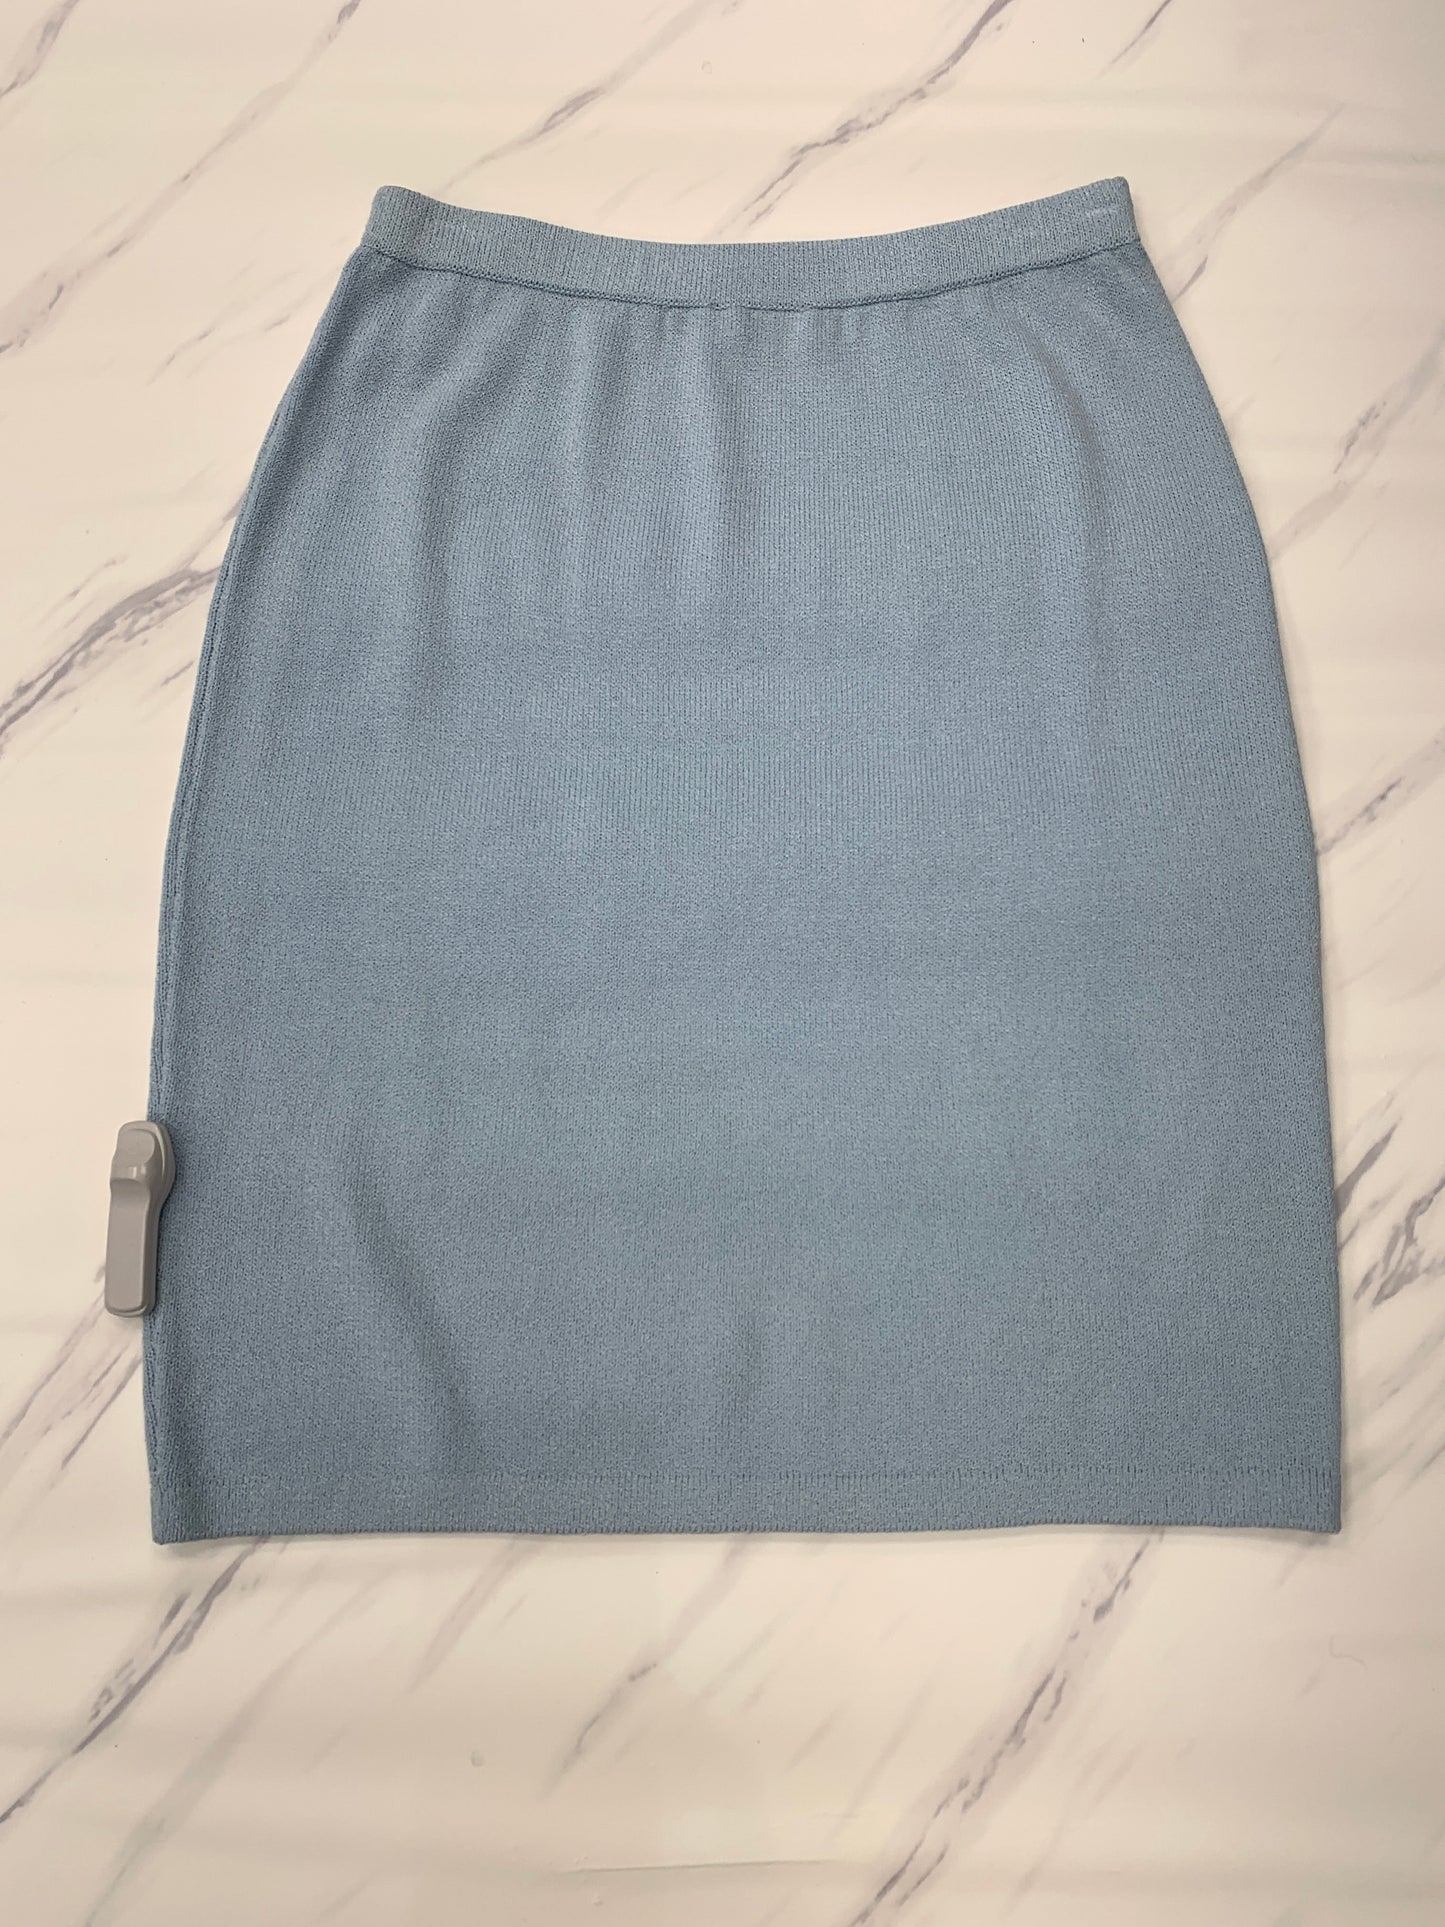 Blue Skirt Designer St John Collection, Size 14